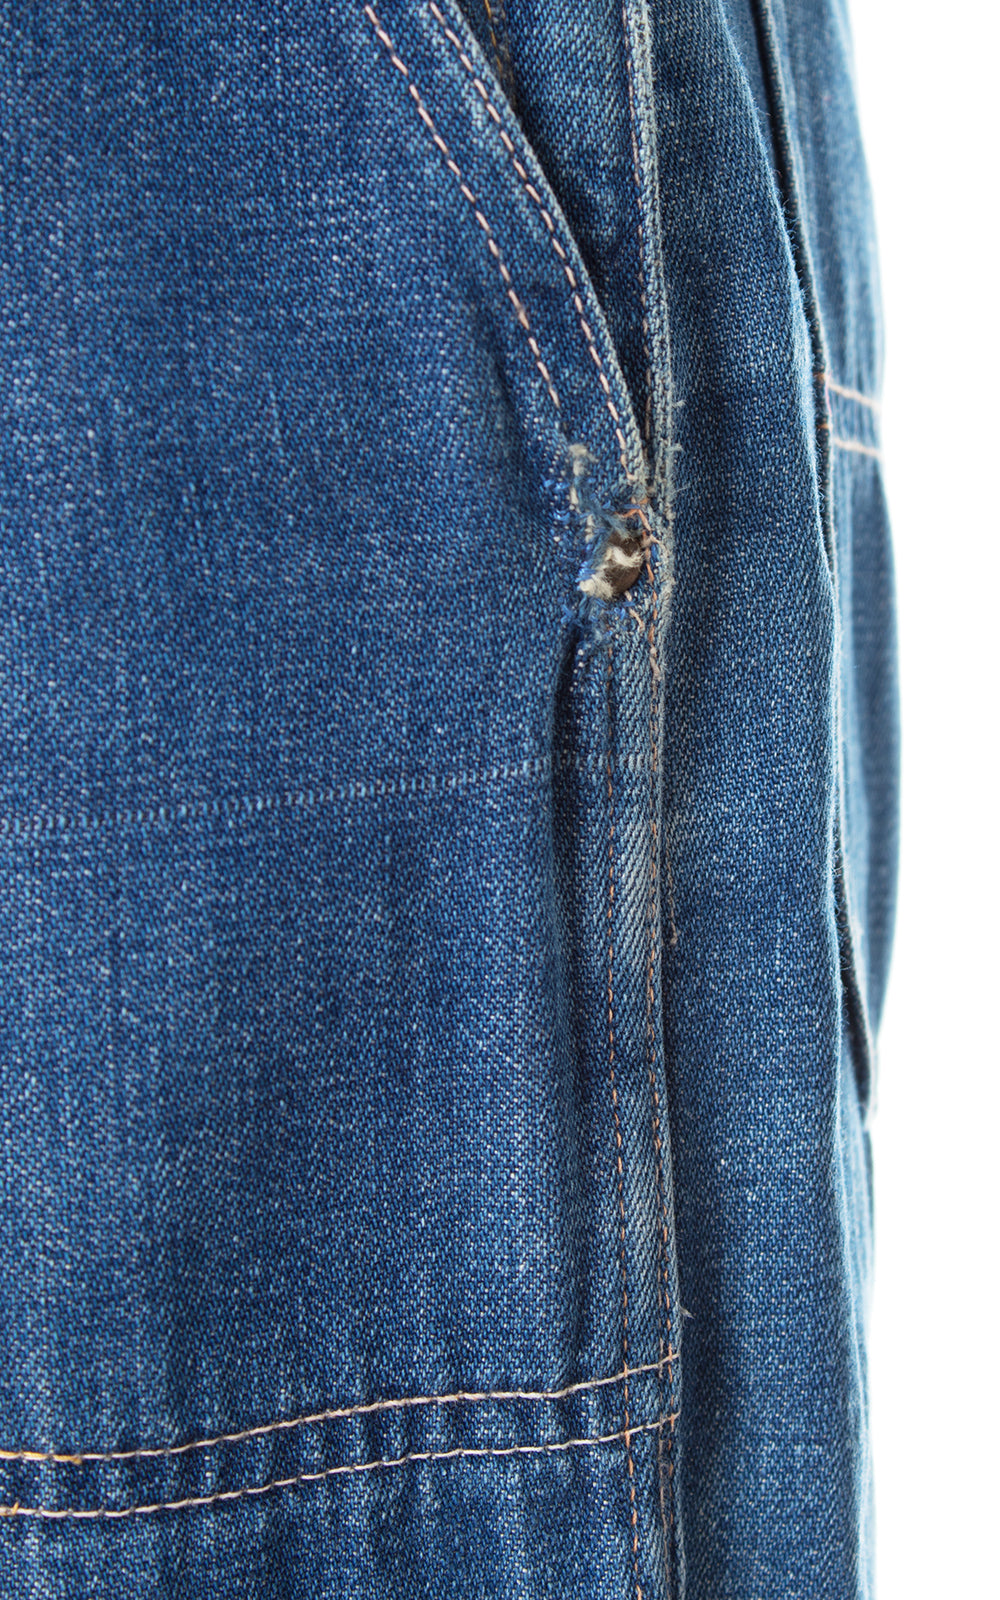 1950s Plaid Cuff Medium-Wash Denim Jeans | xs/small / modern US 2